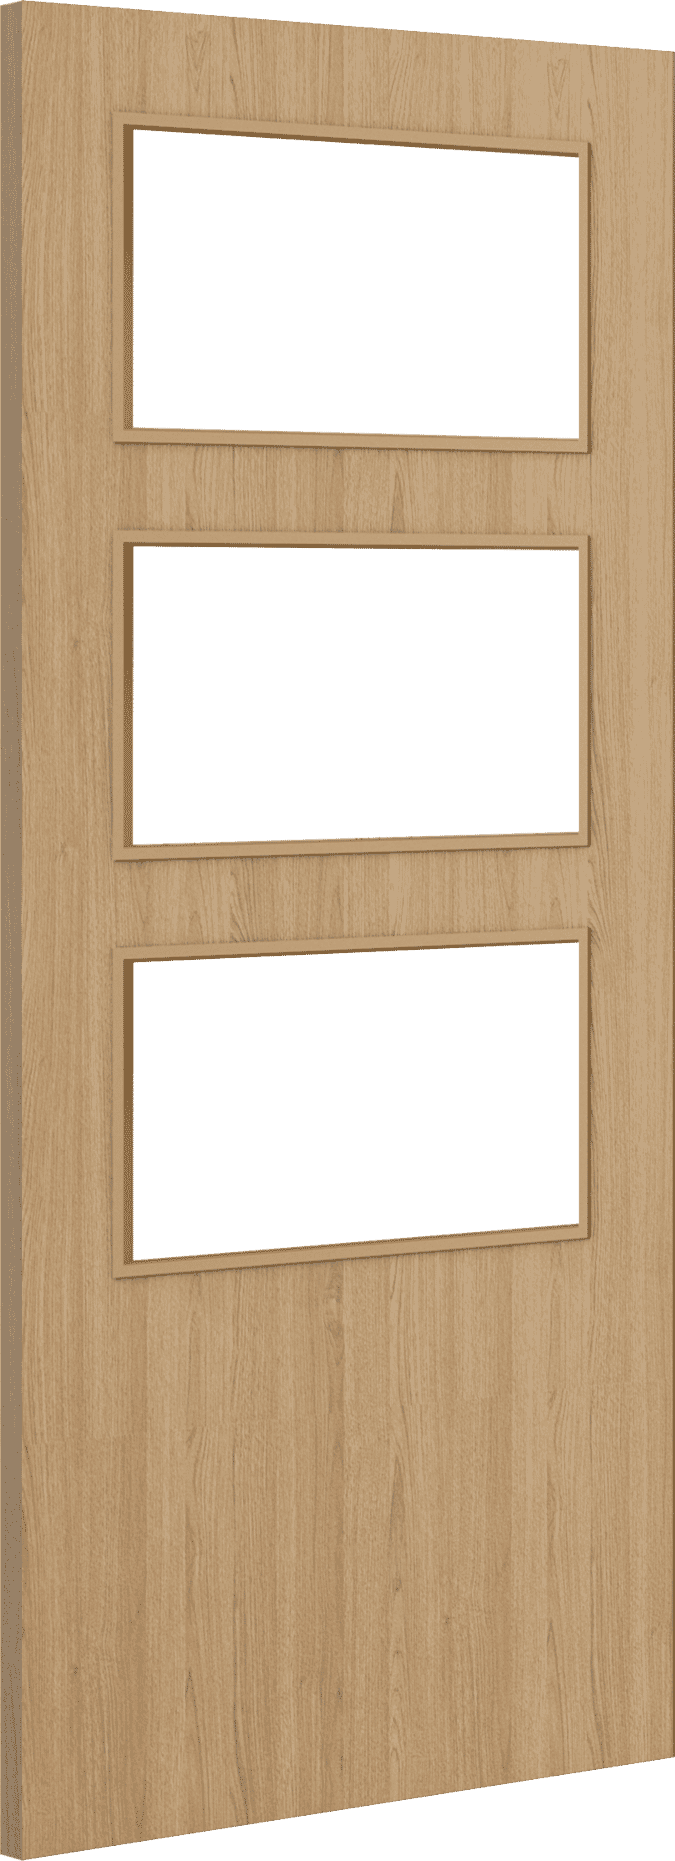 2040mm x 726mm x 44mm Architectural Oak 03 Clear Glazed - Prefinished FD30 Fire Door Blank